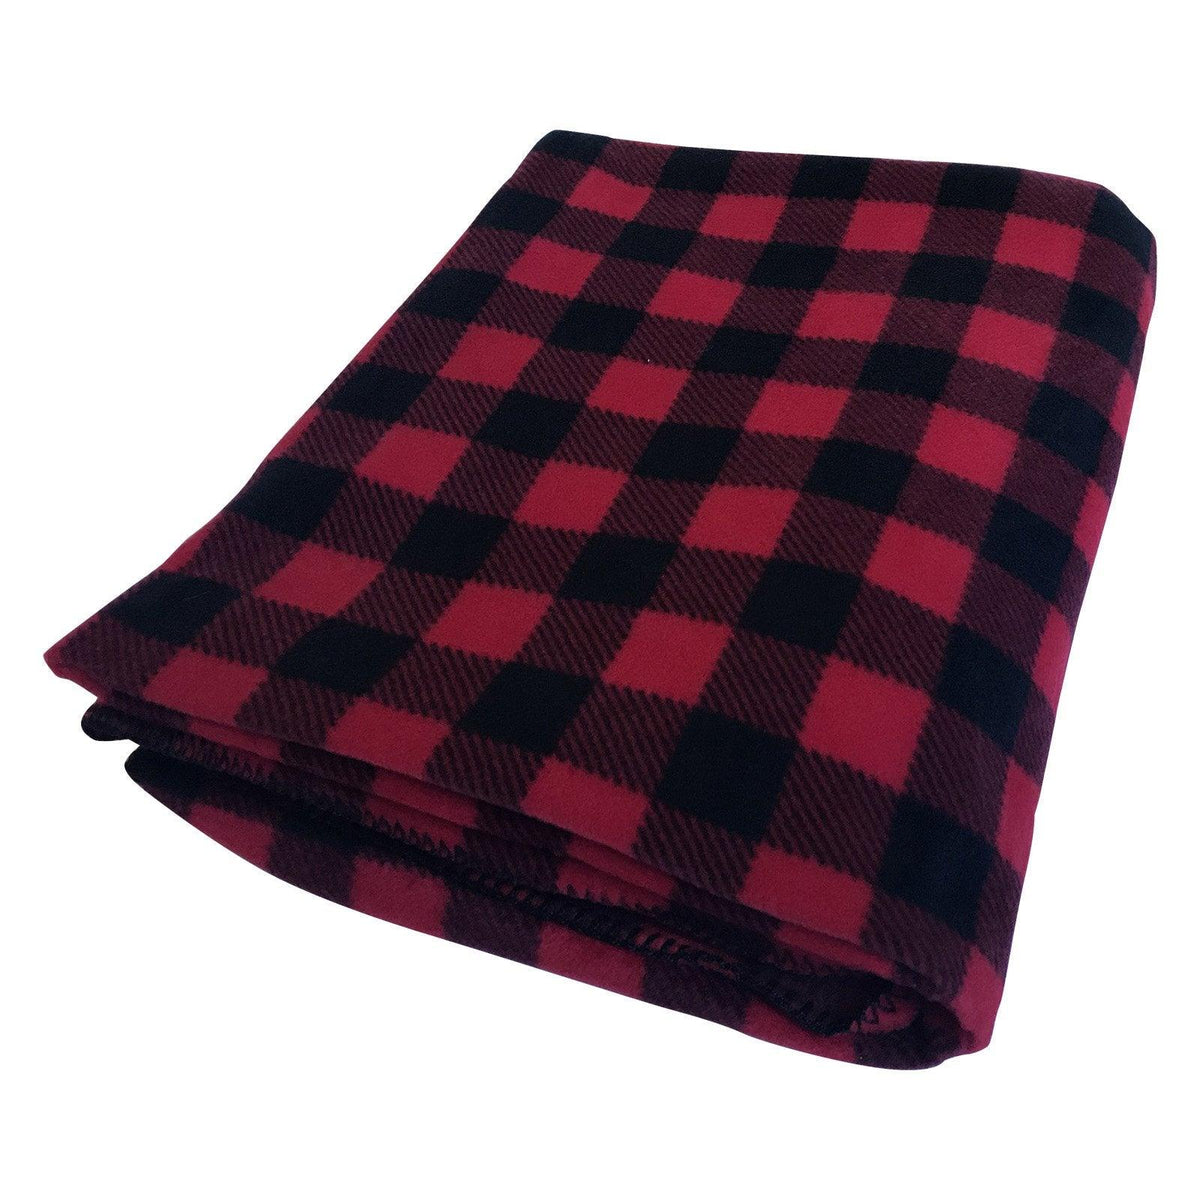 Buffalo Check Pattern Fleece Western Blanket in Red & Black - Flyclothing LLC